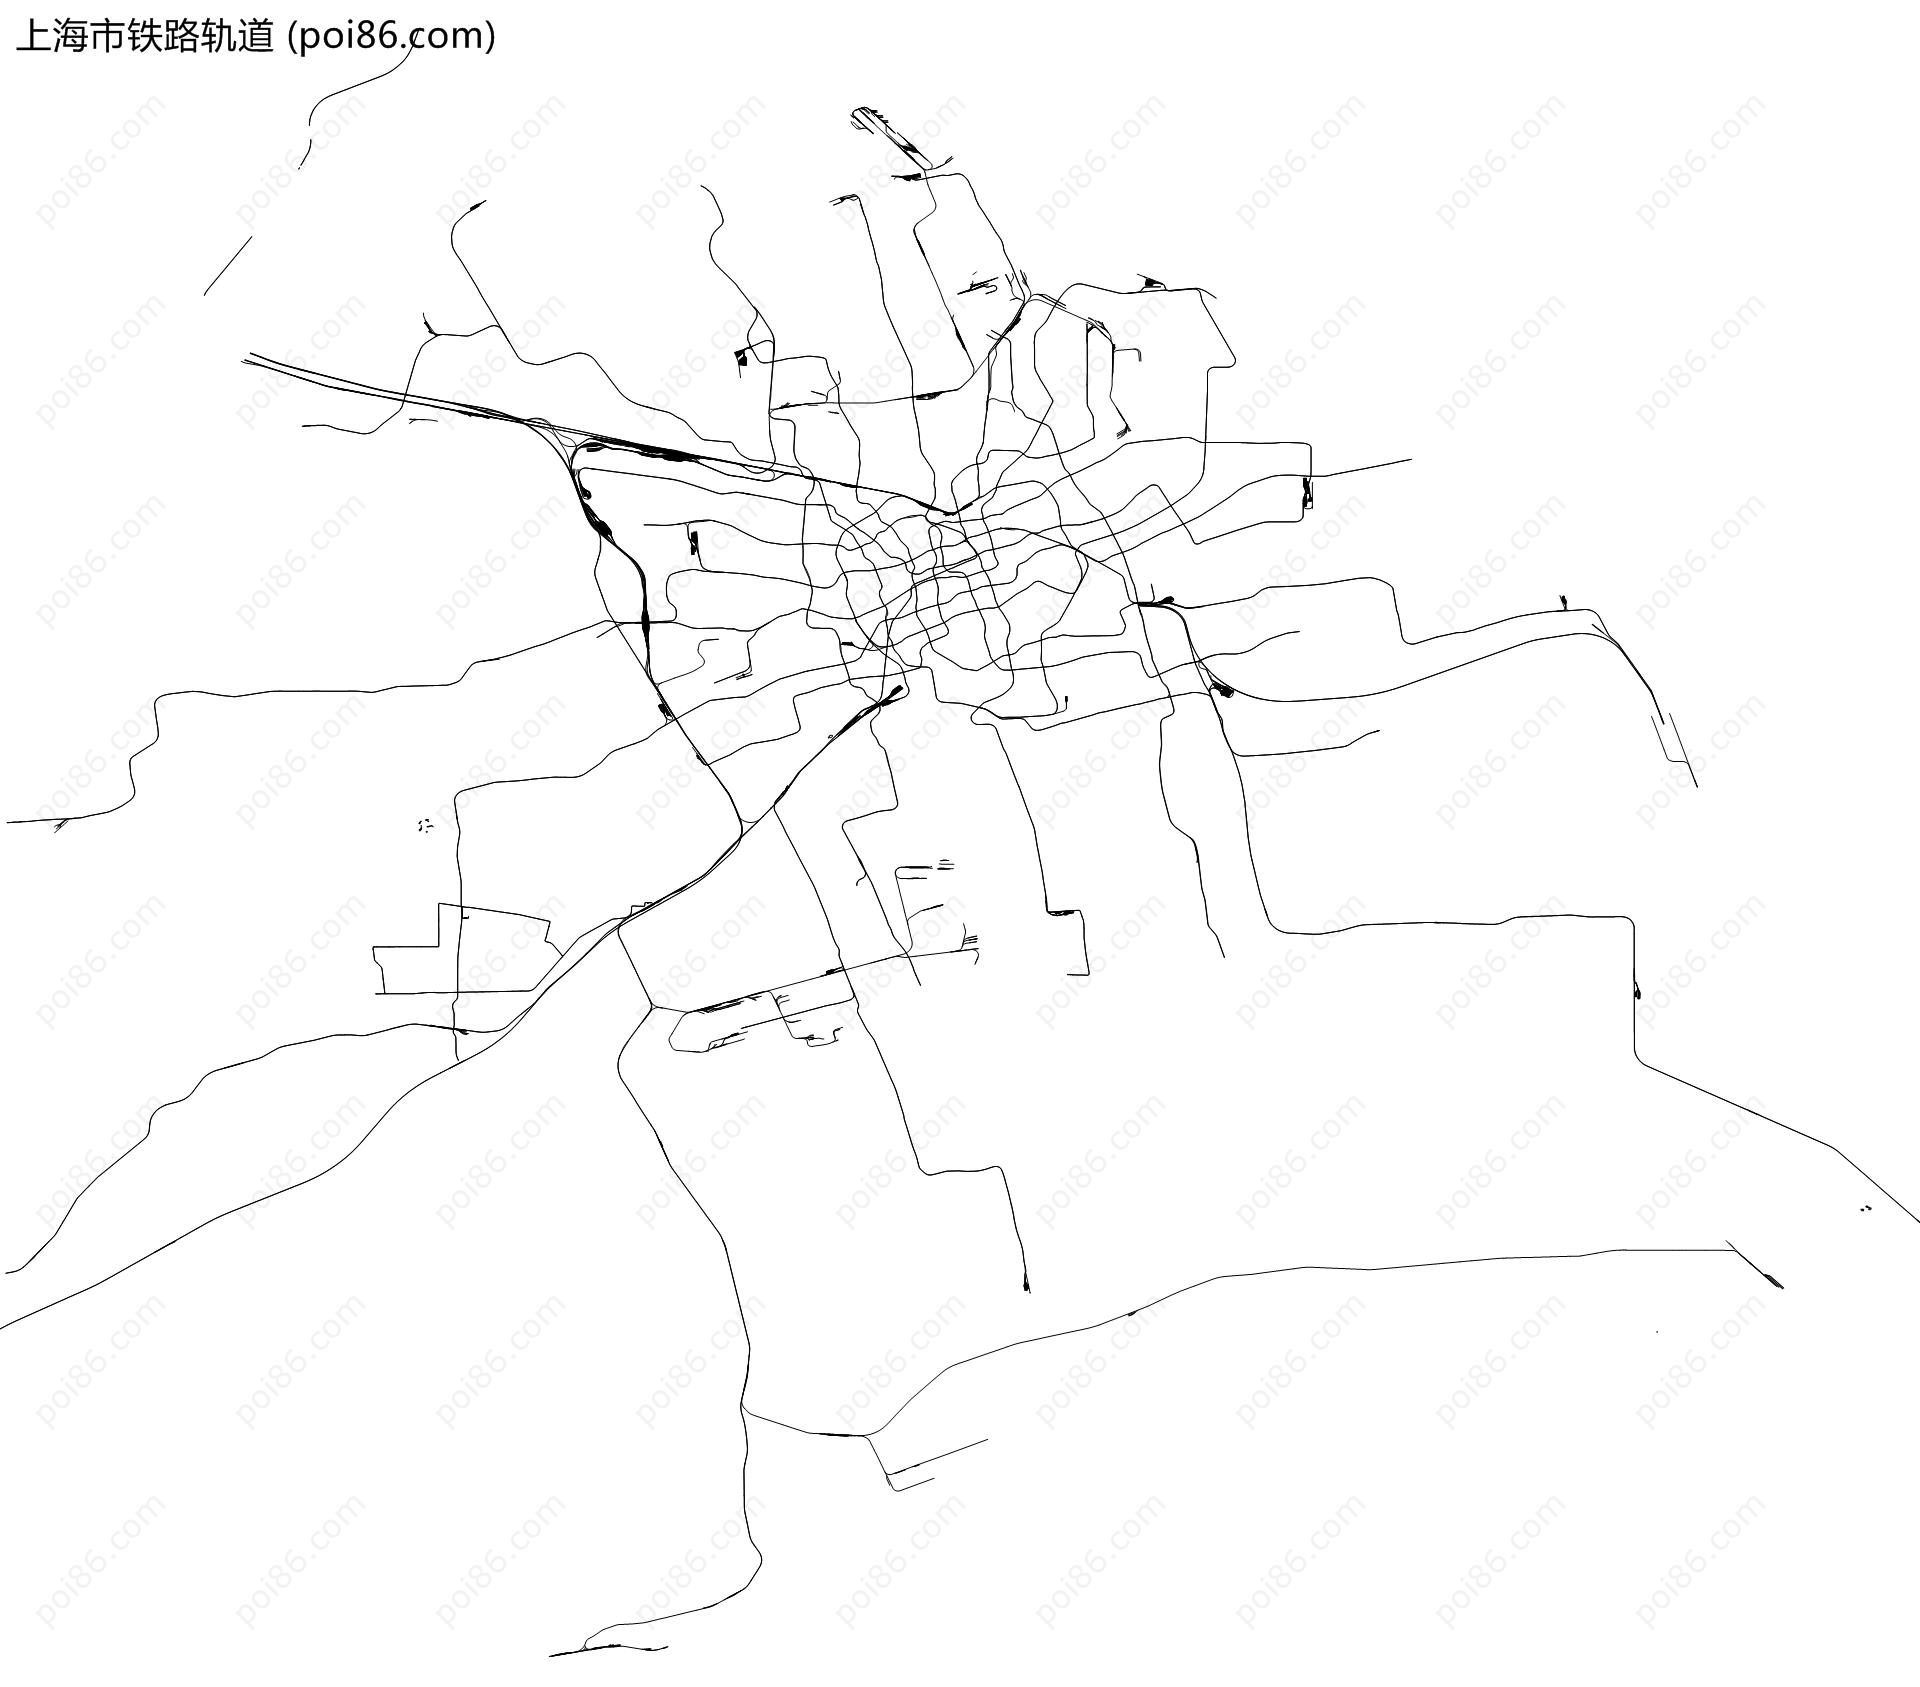 上海市铁路轨道地图